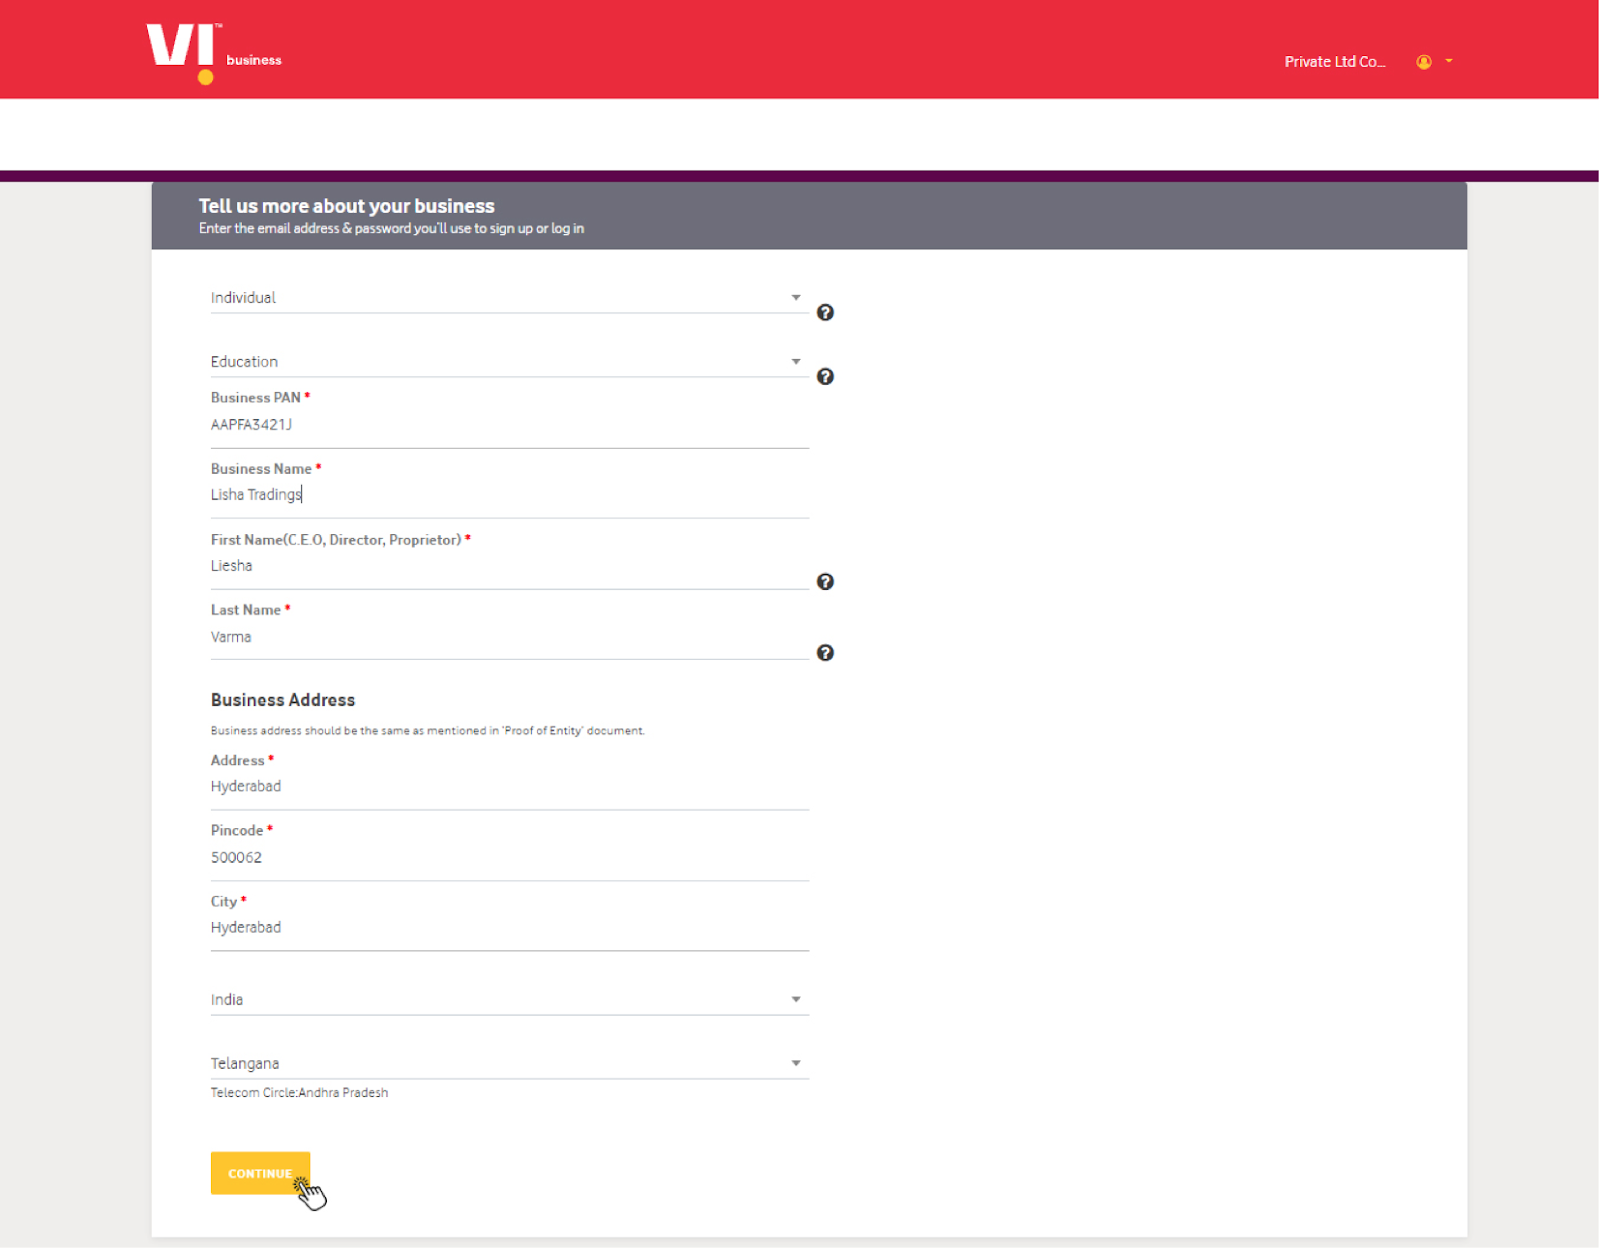 Creating enterprise login details on the Vodafone DLT portal